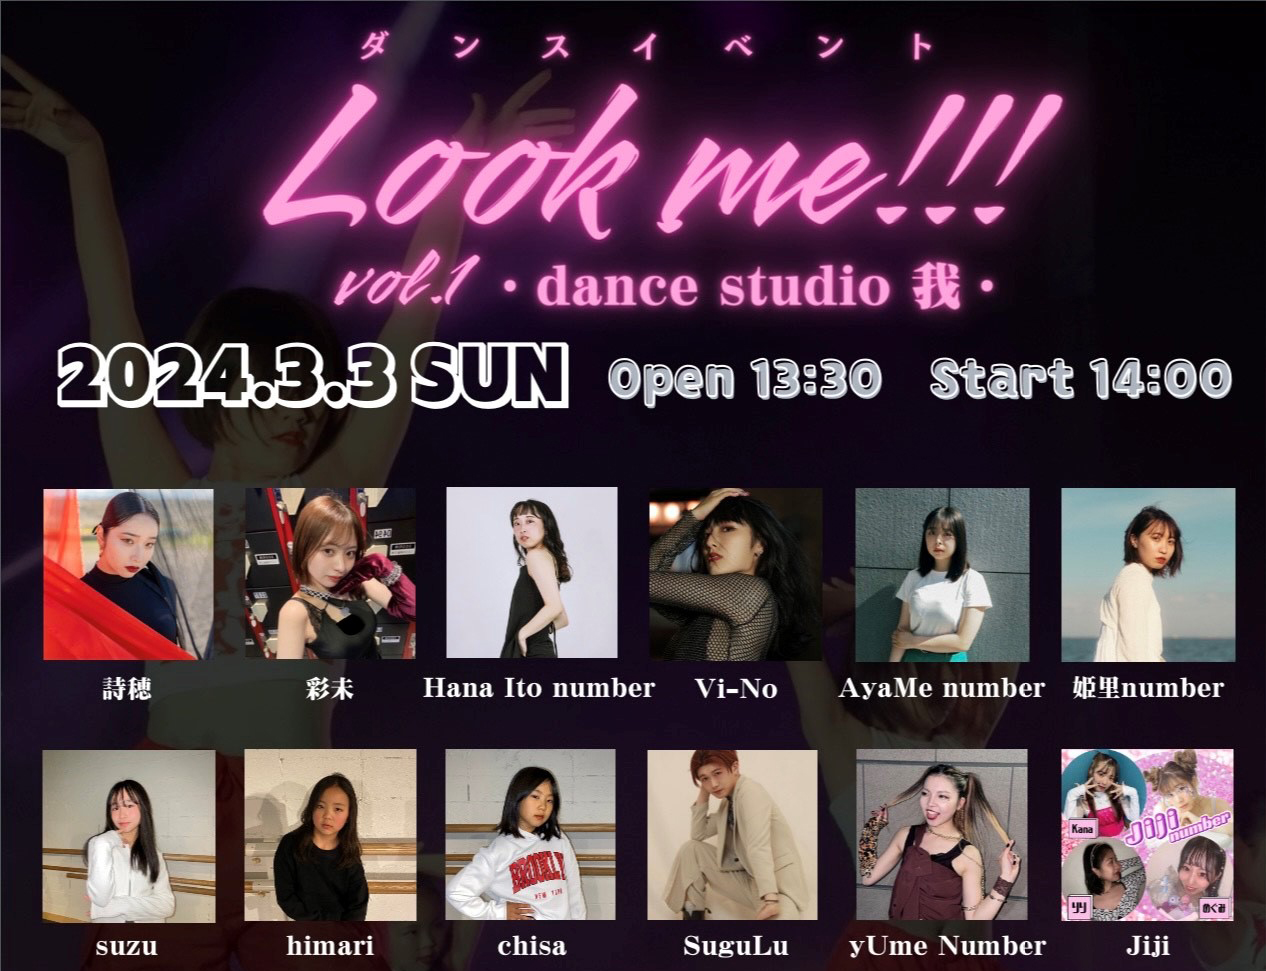 Look me!!! vol.1 ～dance studio 我～